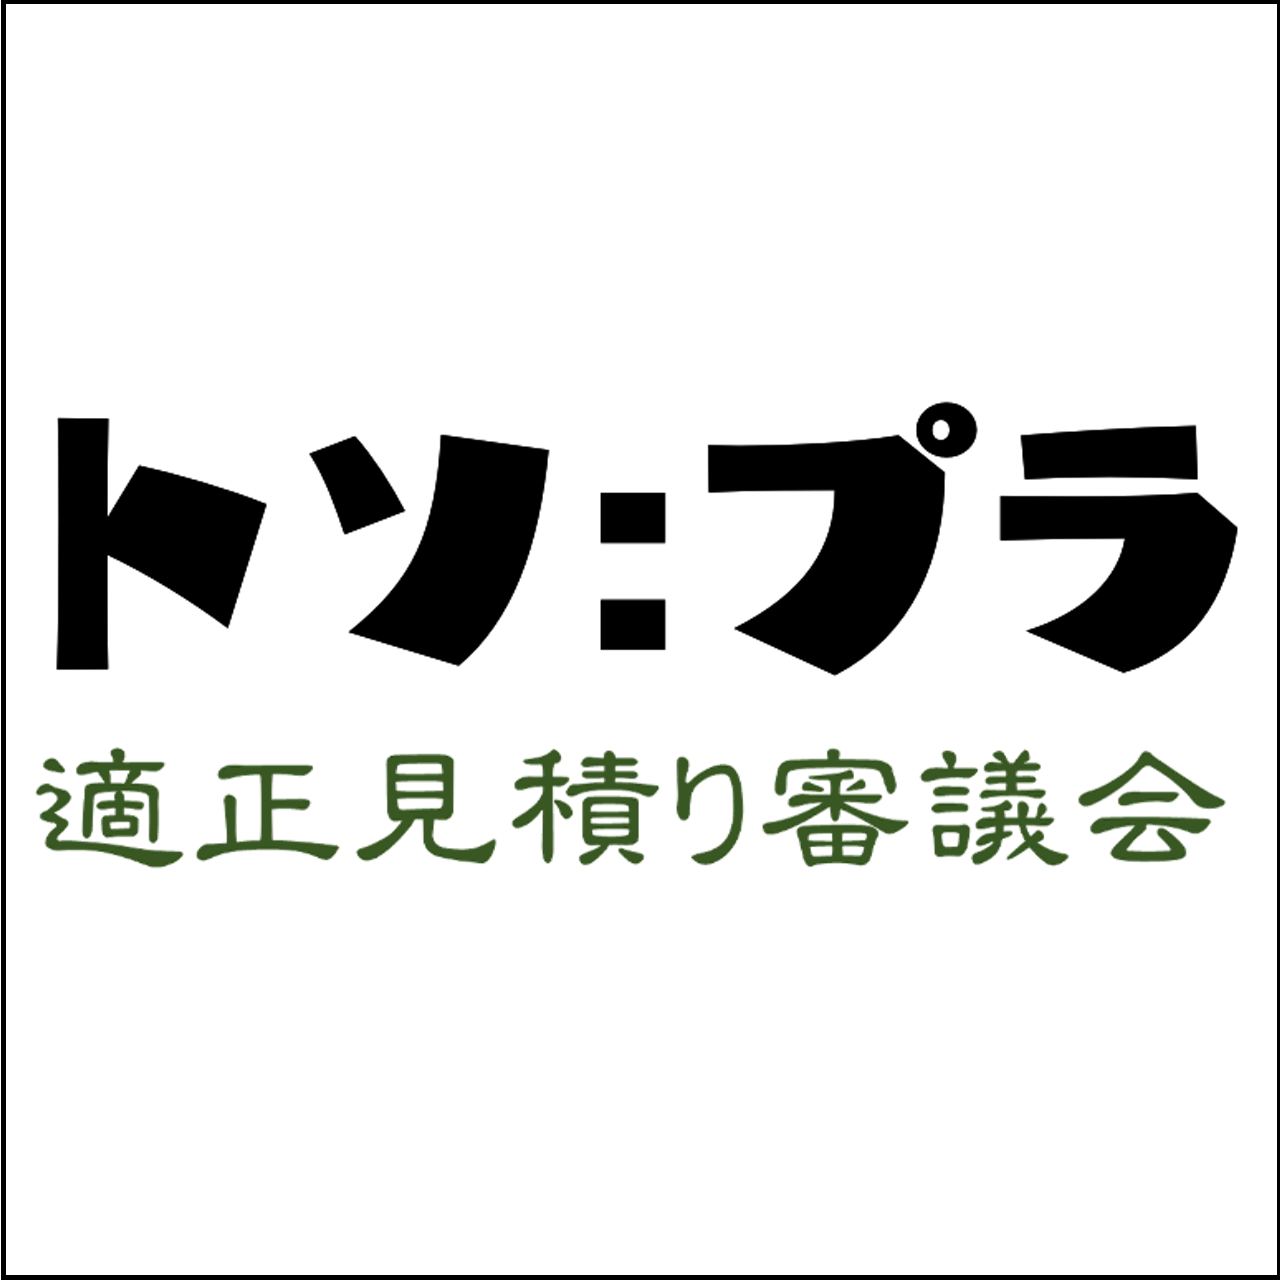 トソプラ・適正見積り審議会logo